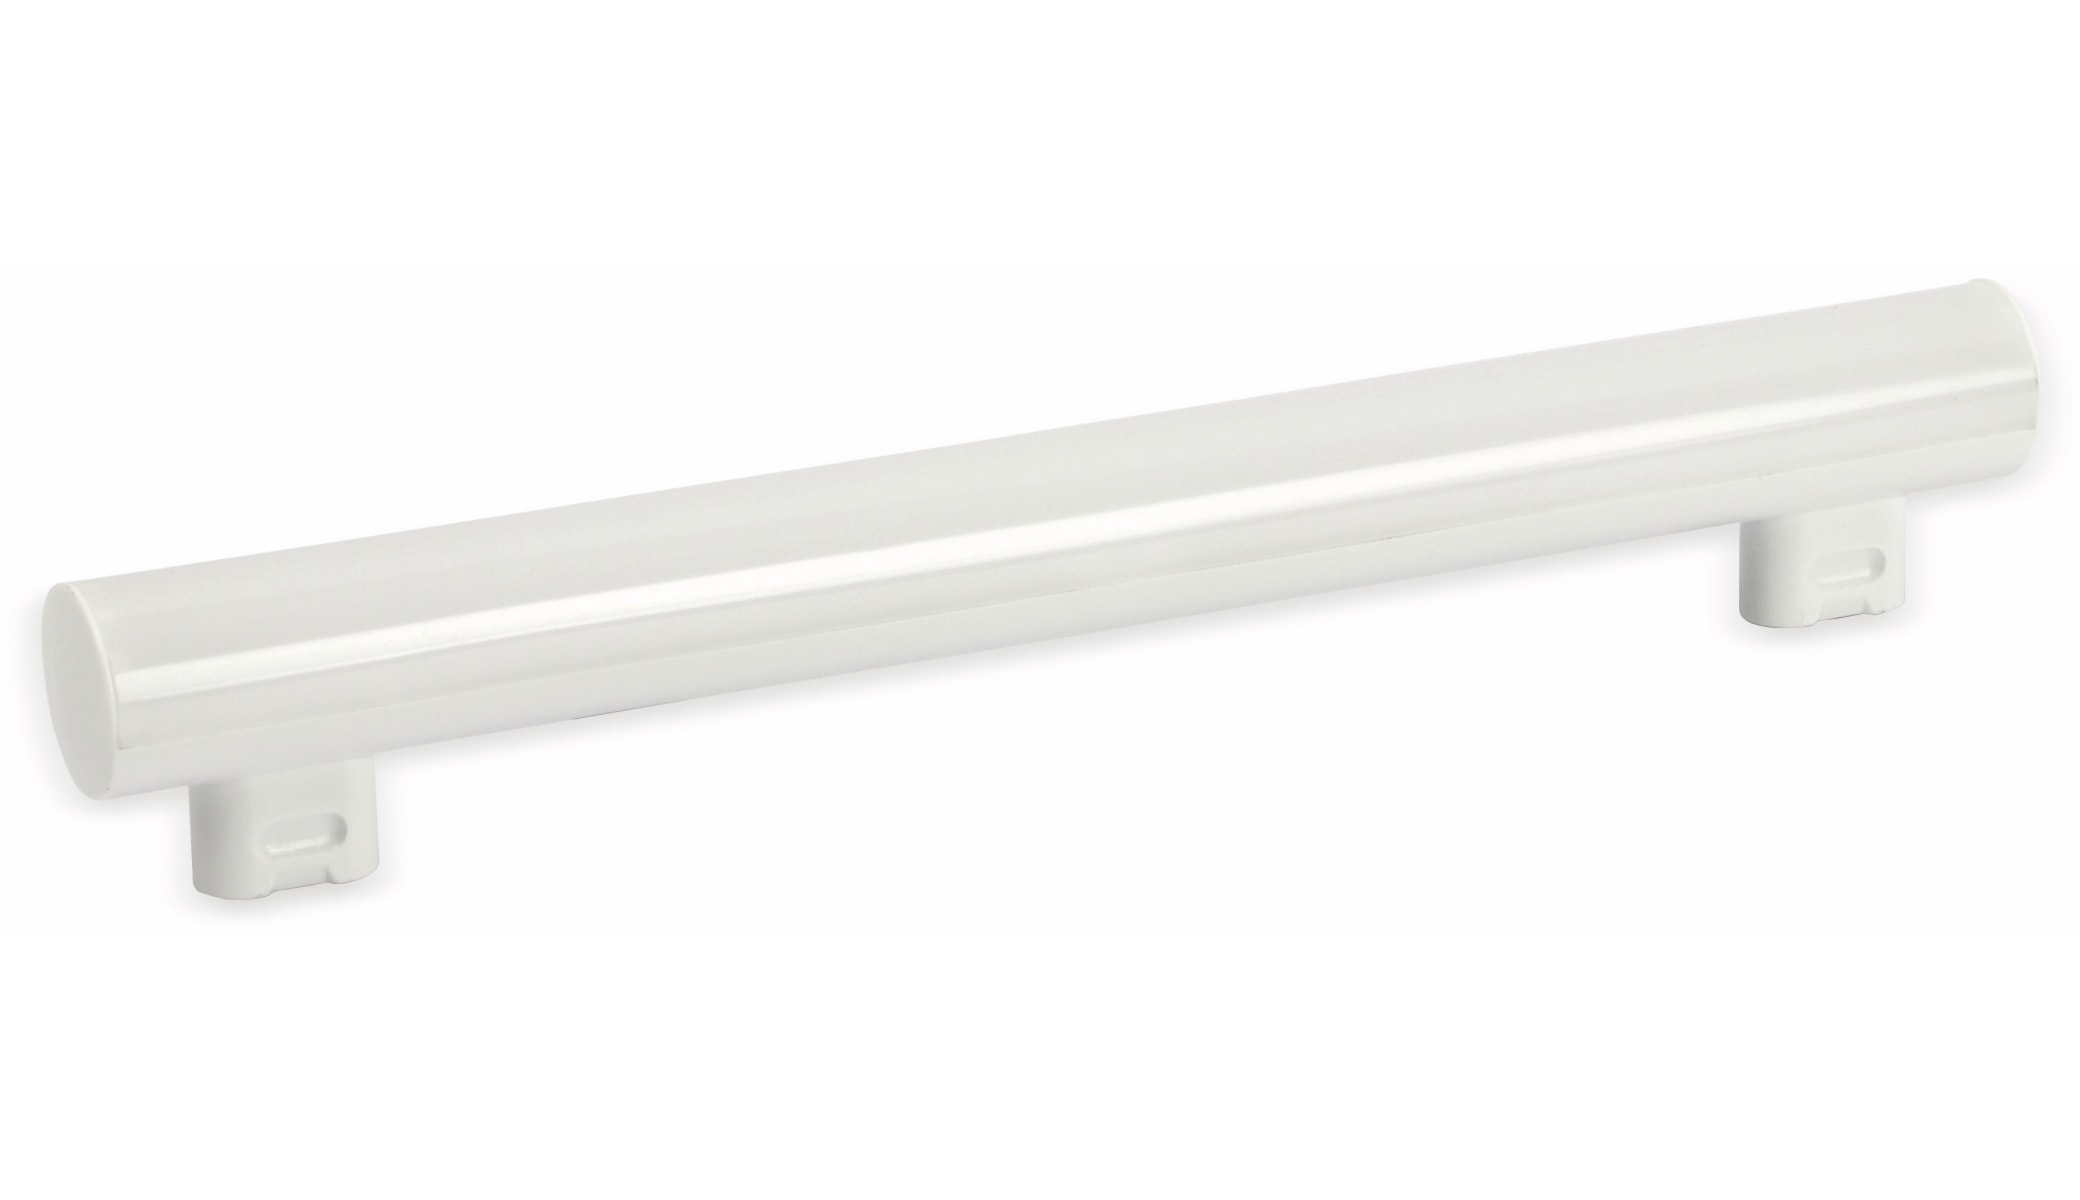 Starlicht LED-Linienlampe S14s, EEK: A+, 30 cm, 4 W, 270 lm, 3000 K